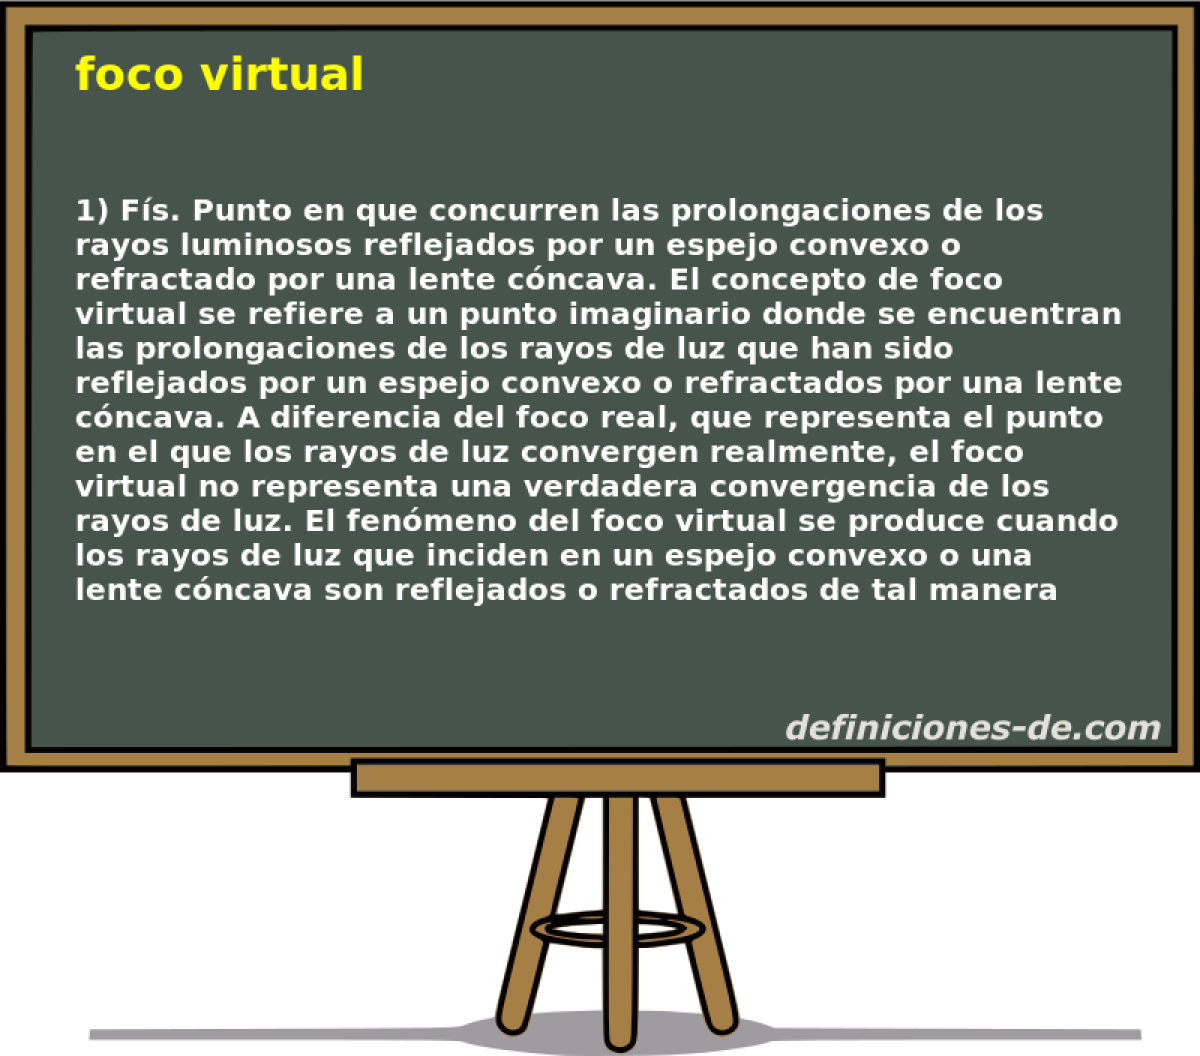 foco virtual 